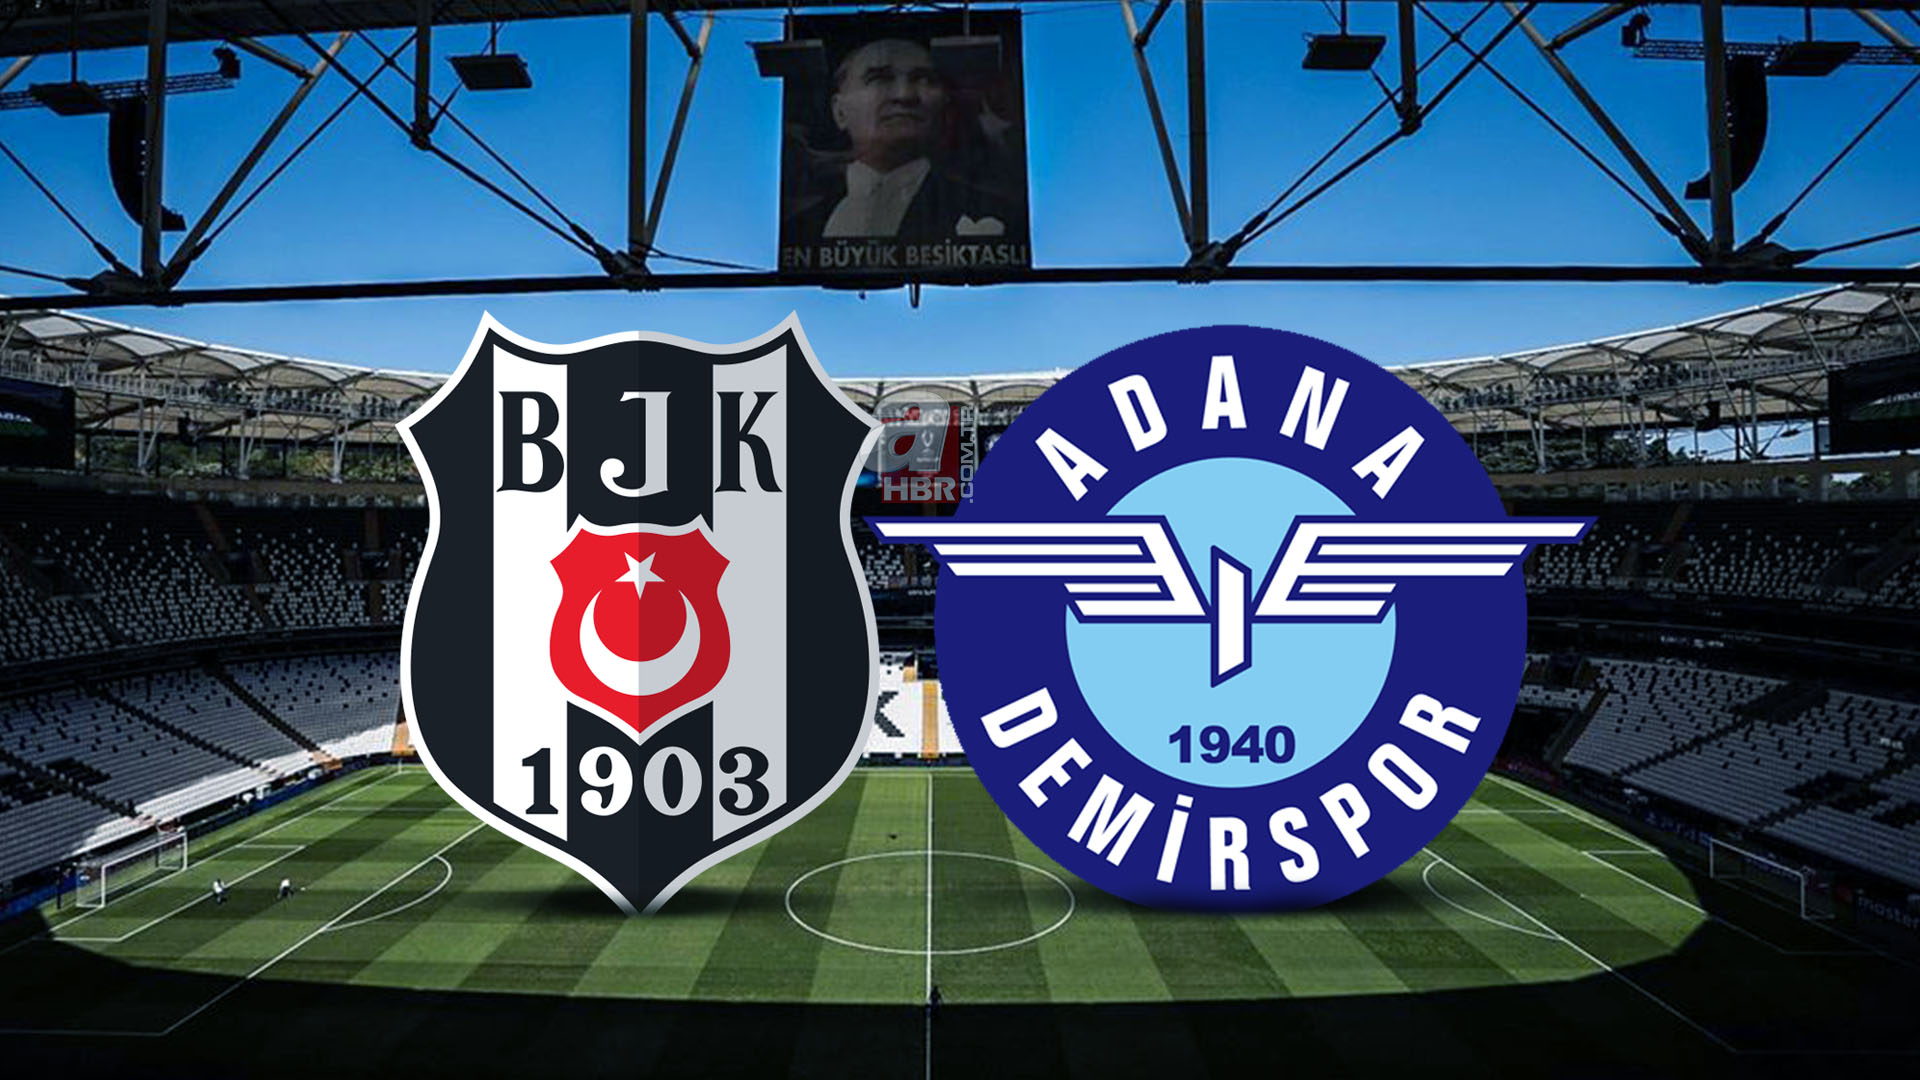 Beşiktaş Adana Demirspor maçı ne zaman, saat kaçta? Süper Lig 6. hafta BJK Adana Demirspor maçı hangi kanalda?